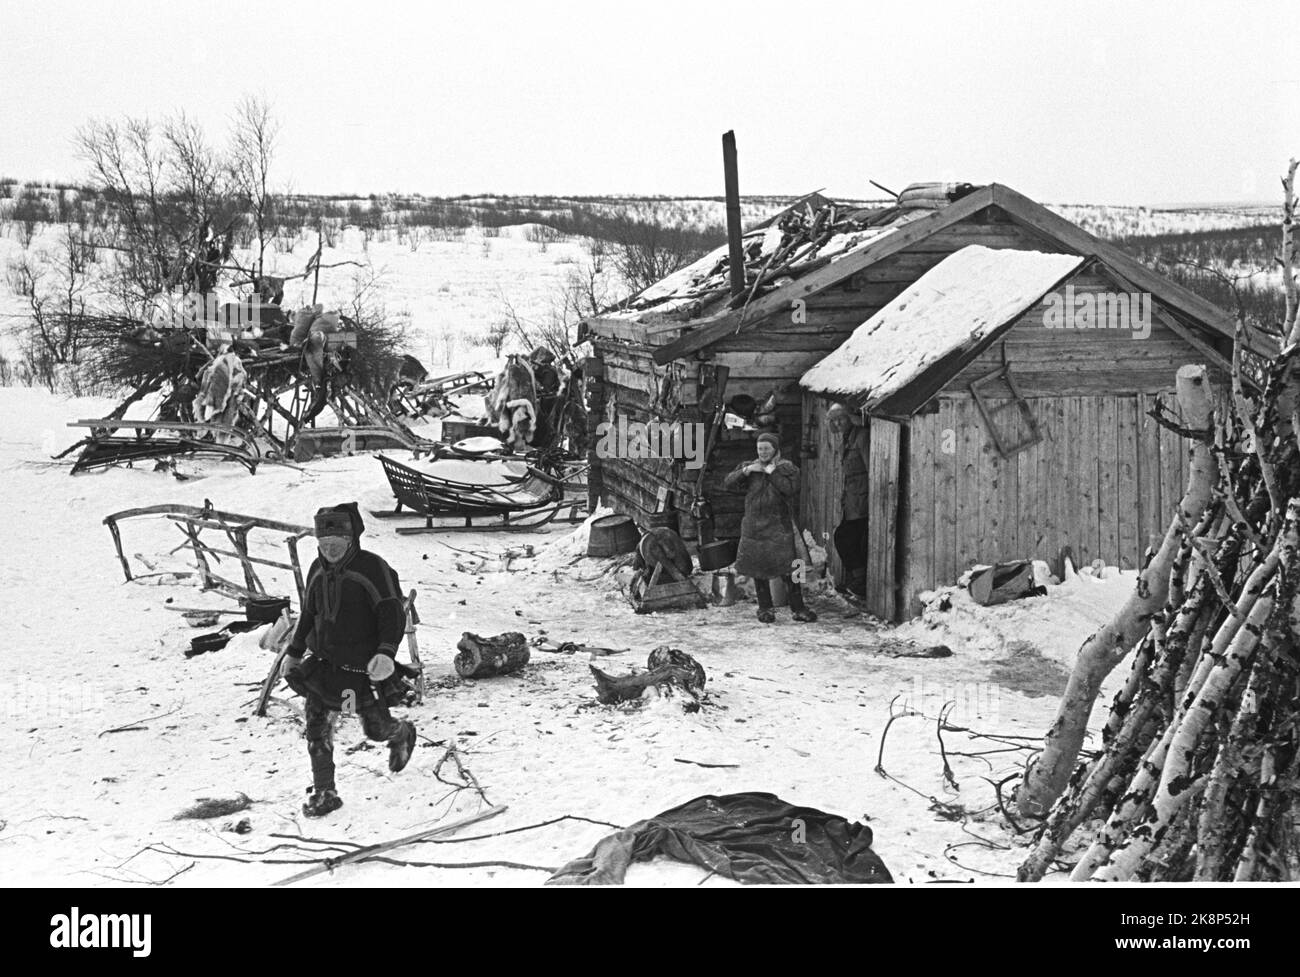 Karasjok 1952. La vita quotidiana dei Sami a Karasjok. Qui vediamo da un workshop dove ci sono molte attività. Foto: Sverre A. Børretzen / corrente / NTB Foto Stock